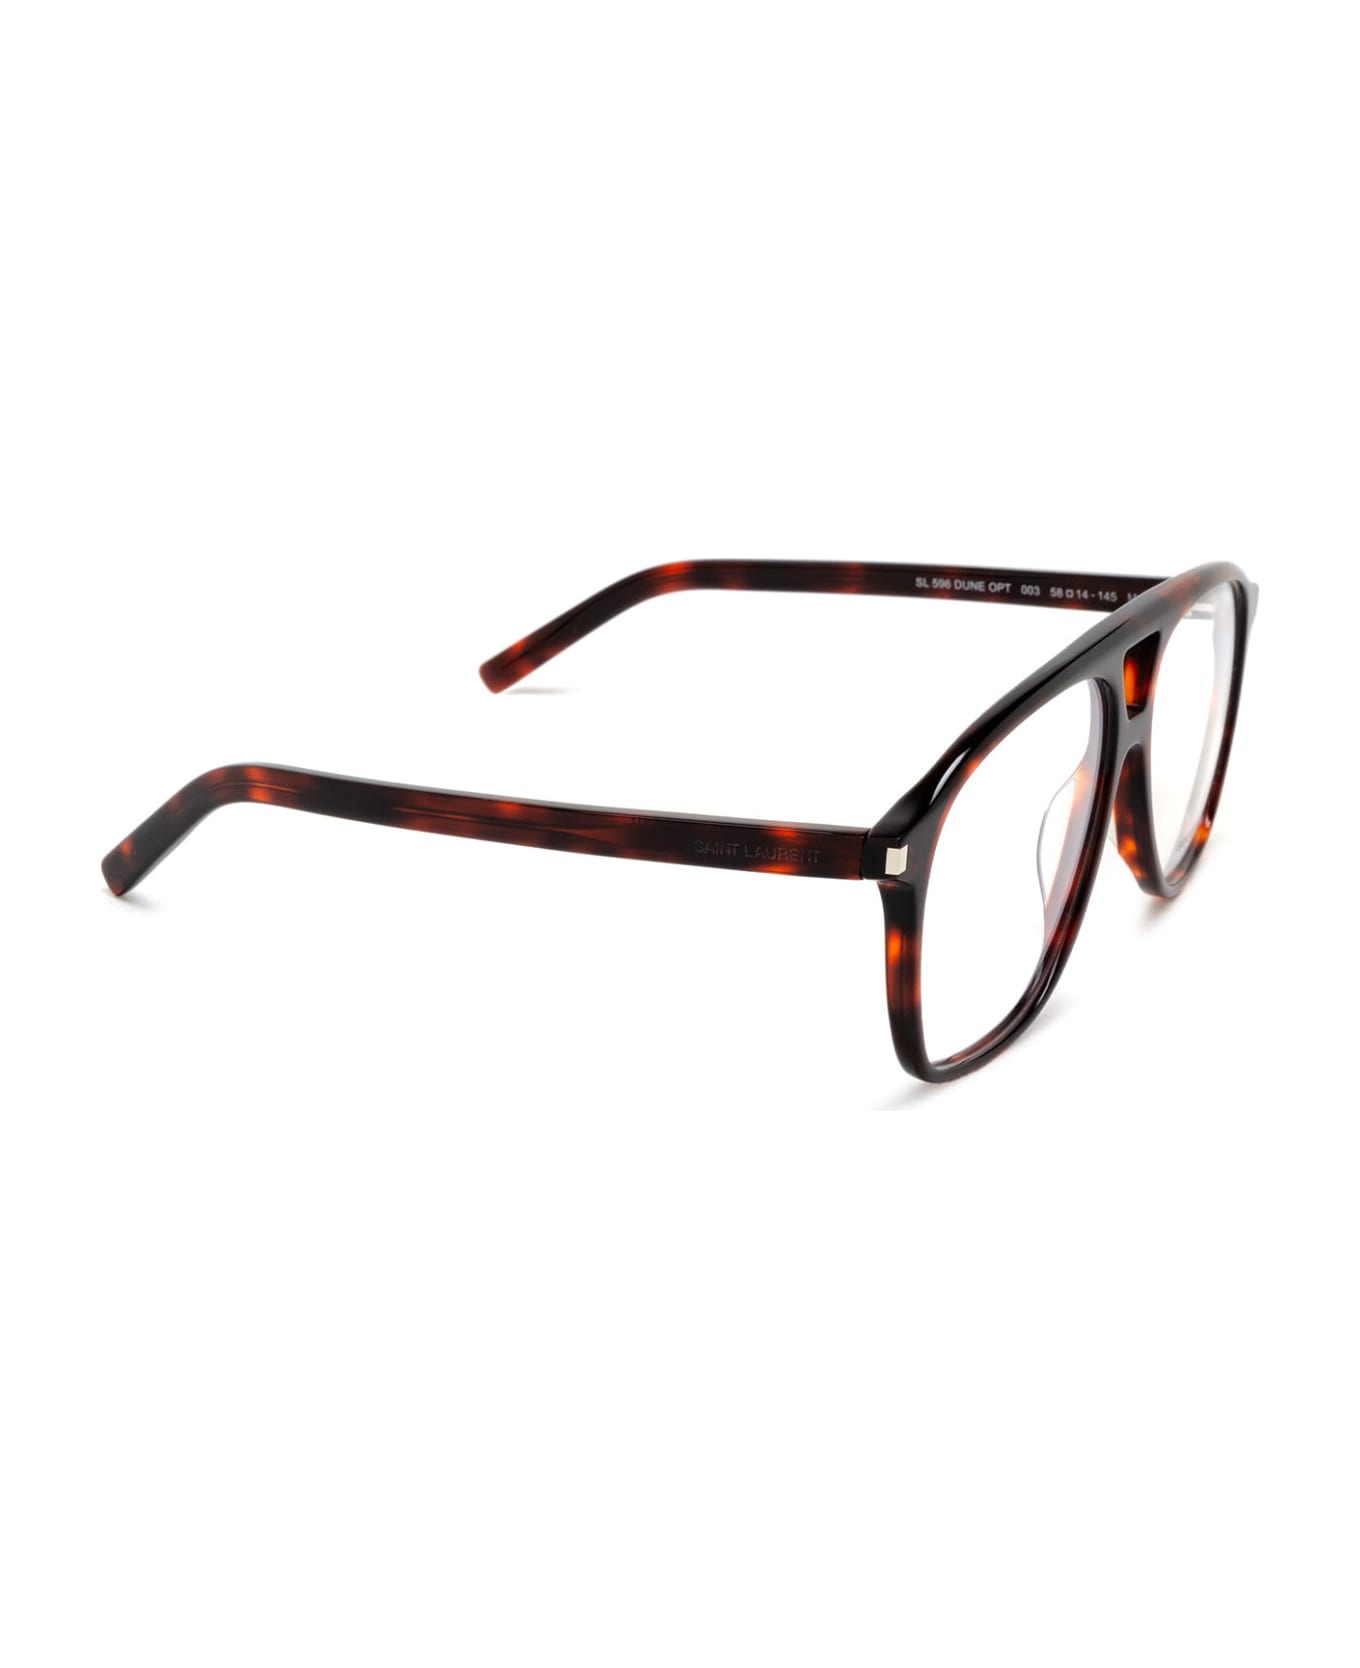 Saint Laurent Eyewear Sl 596 Opt Havana Glasses - Havana アイウェア